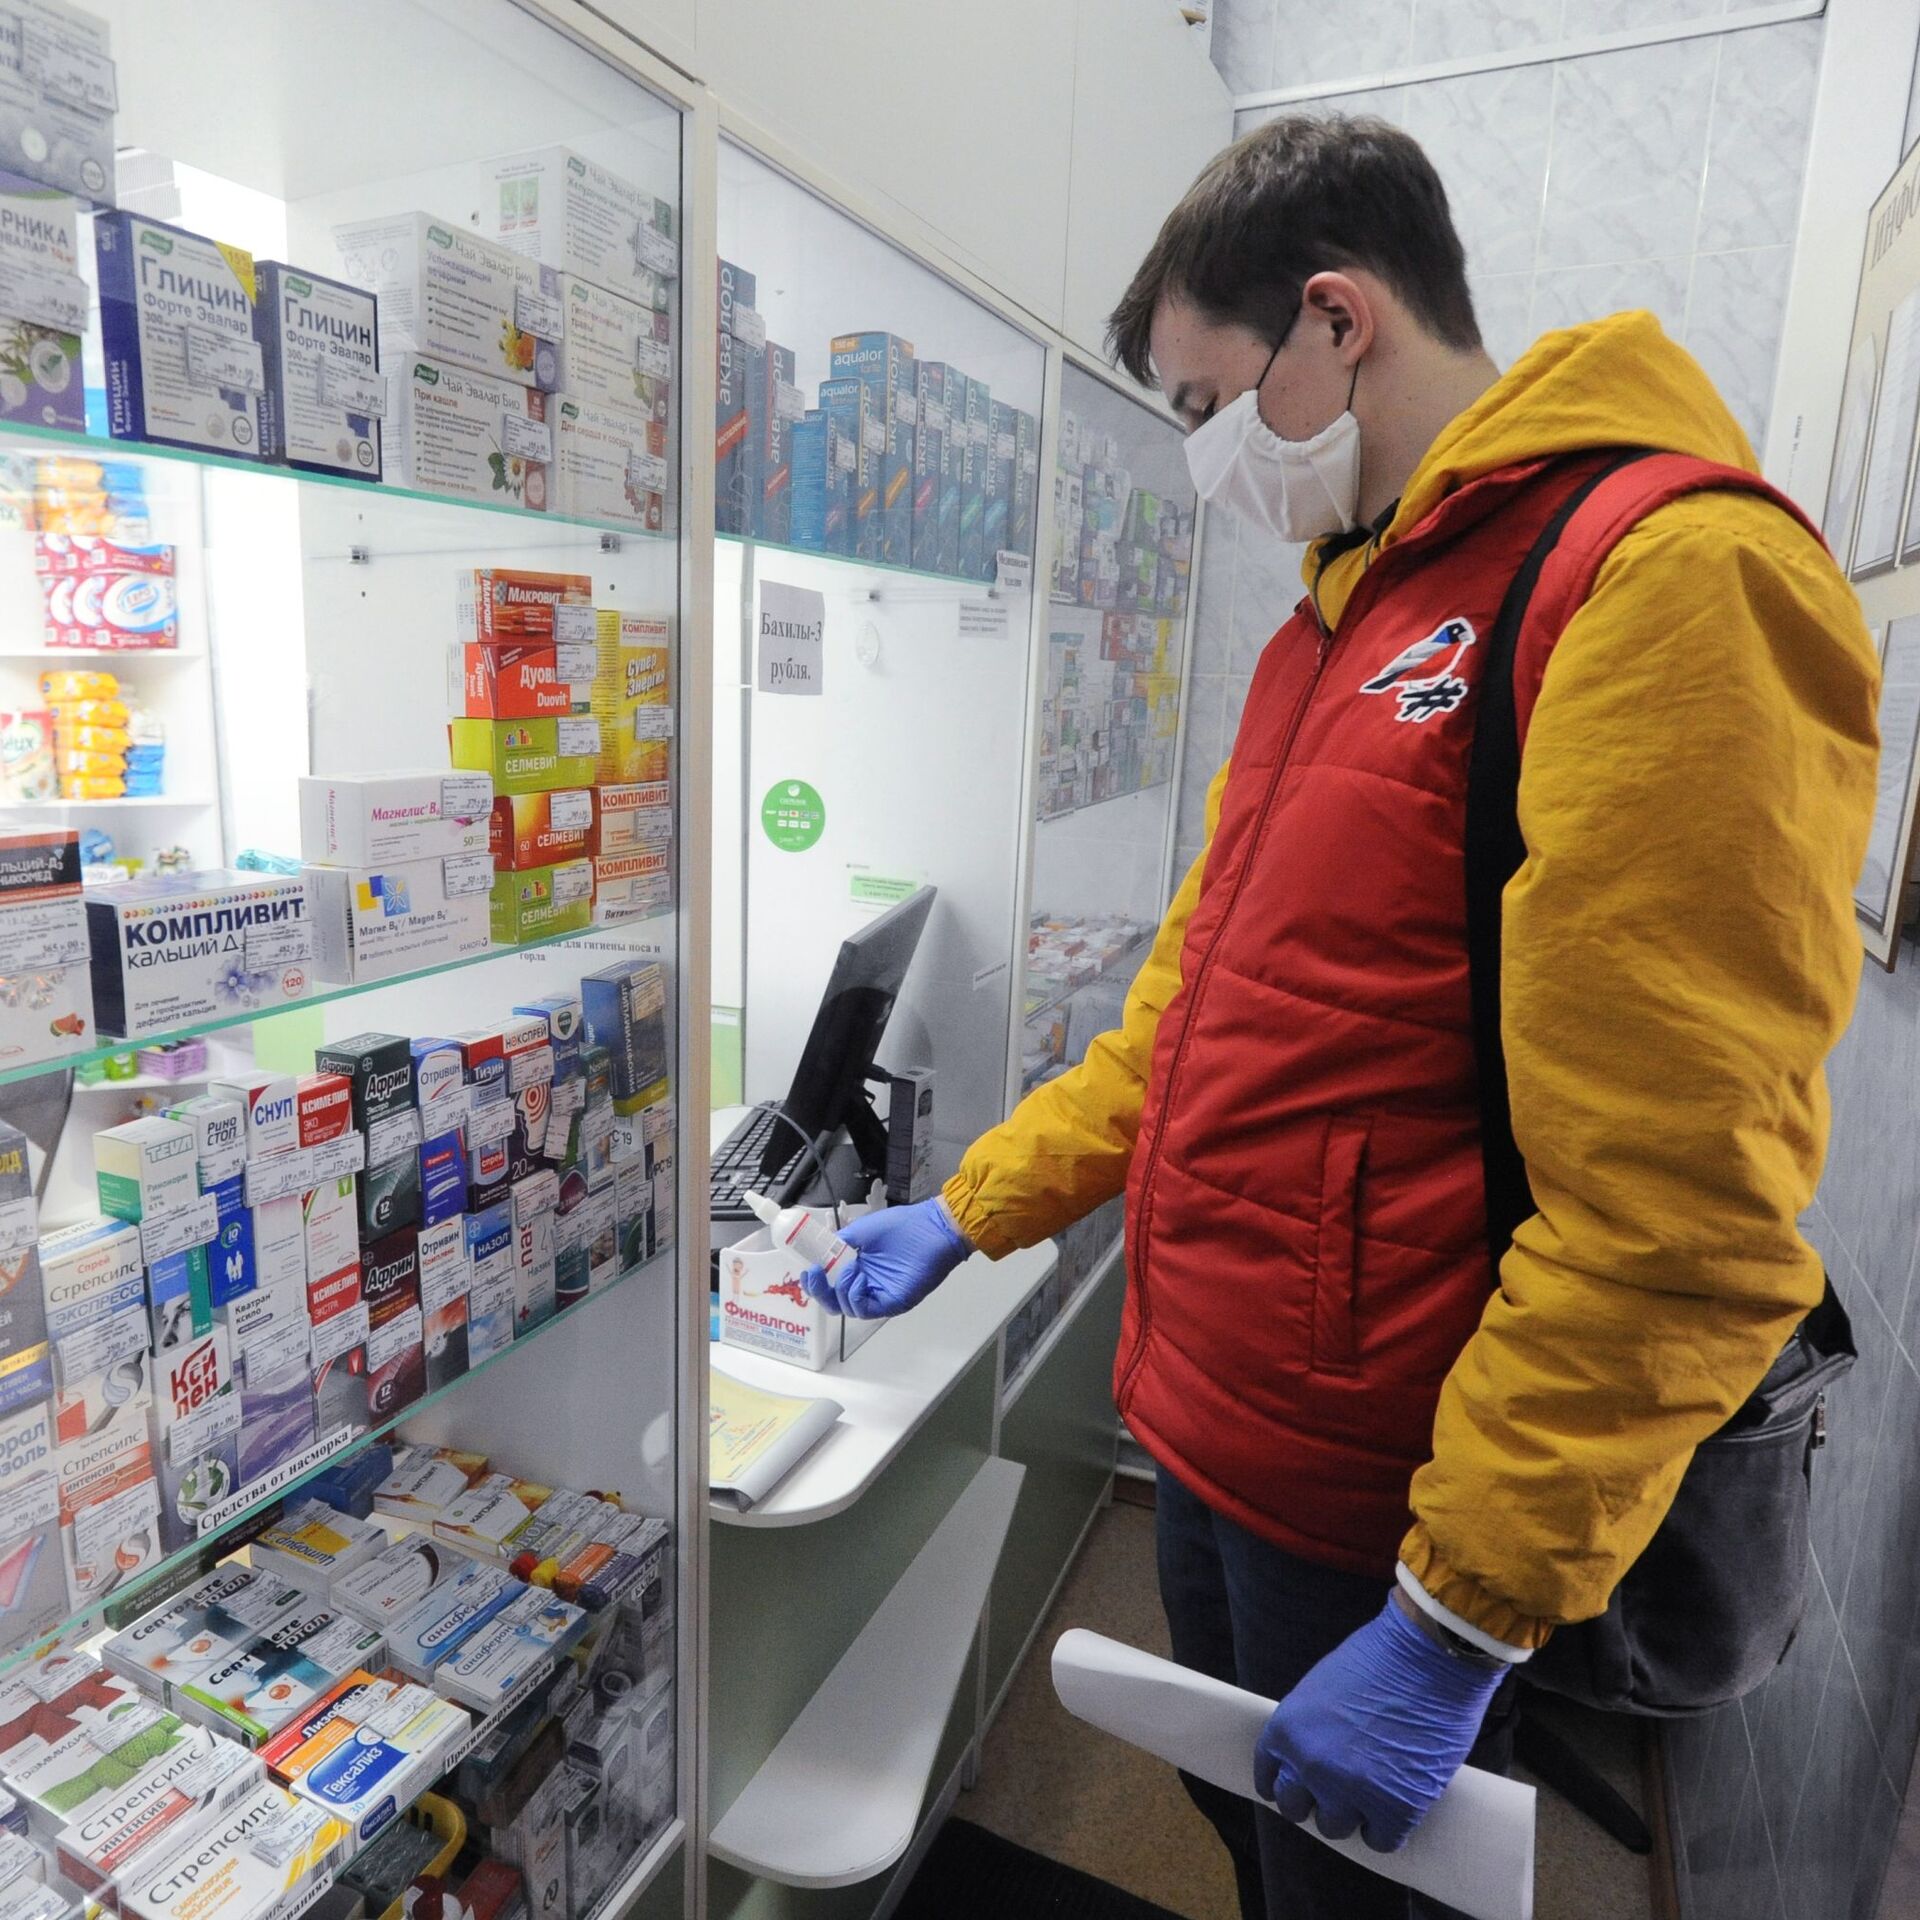 Купить лекарство в белоруссии